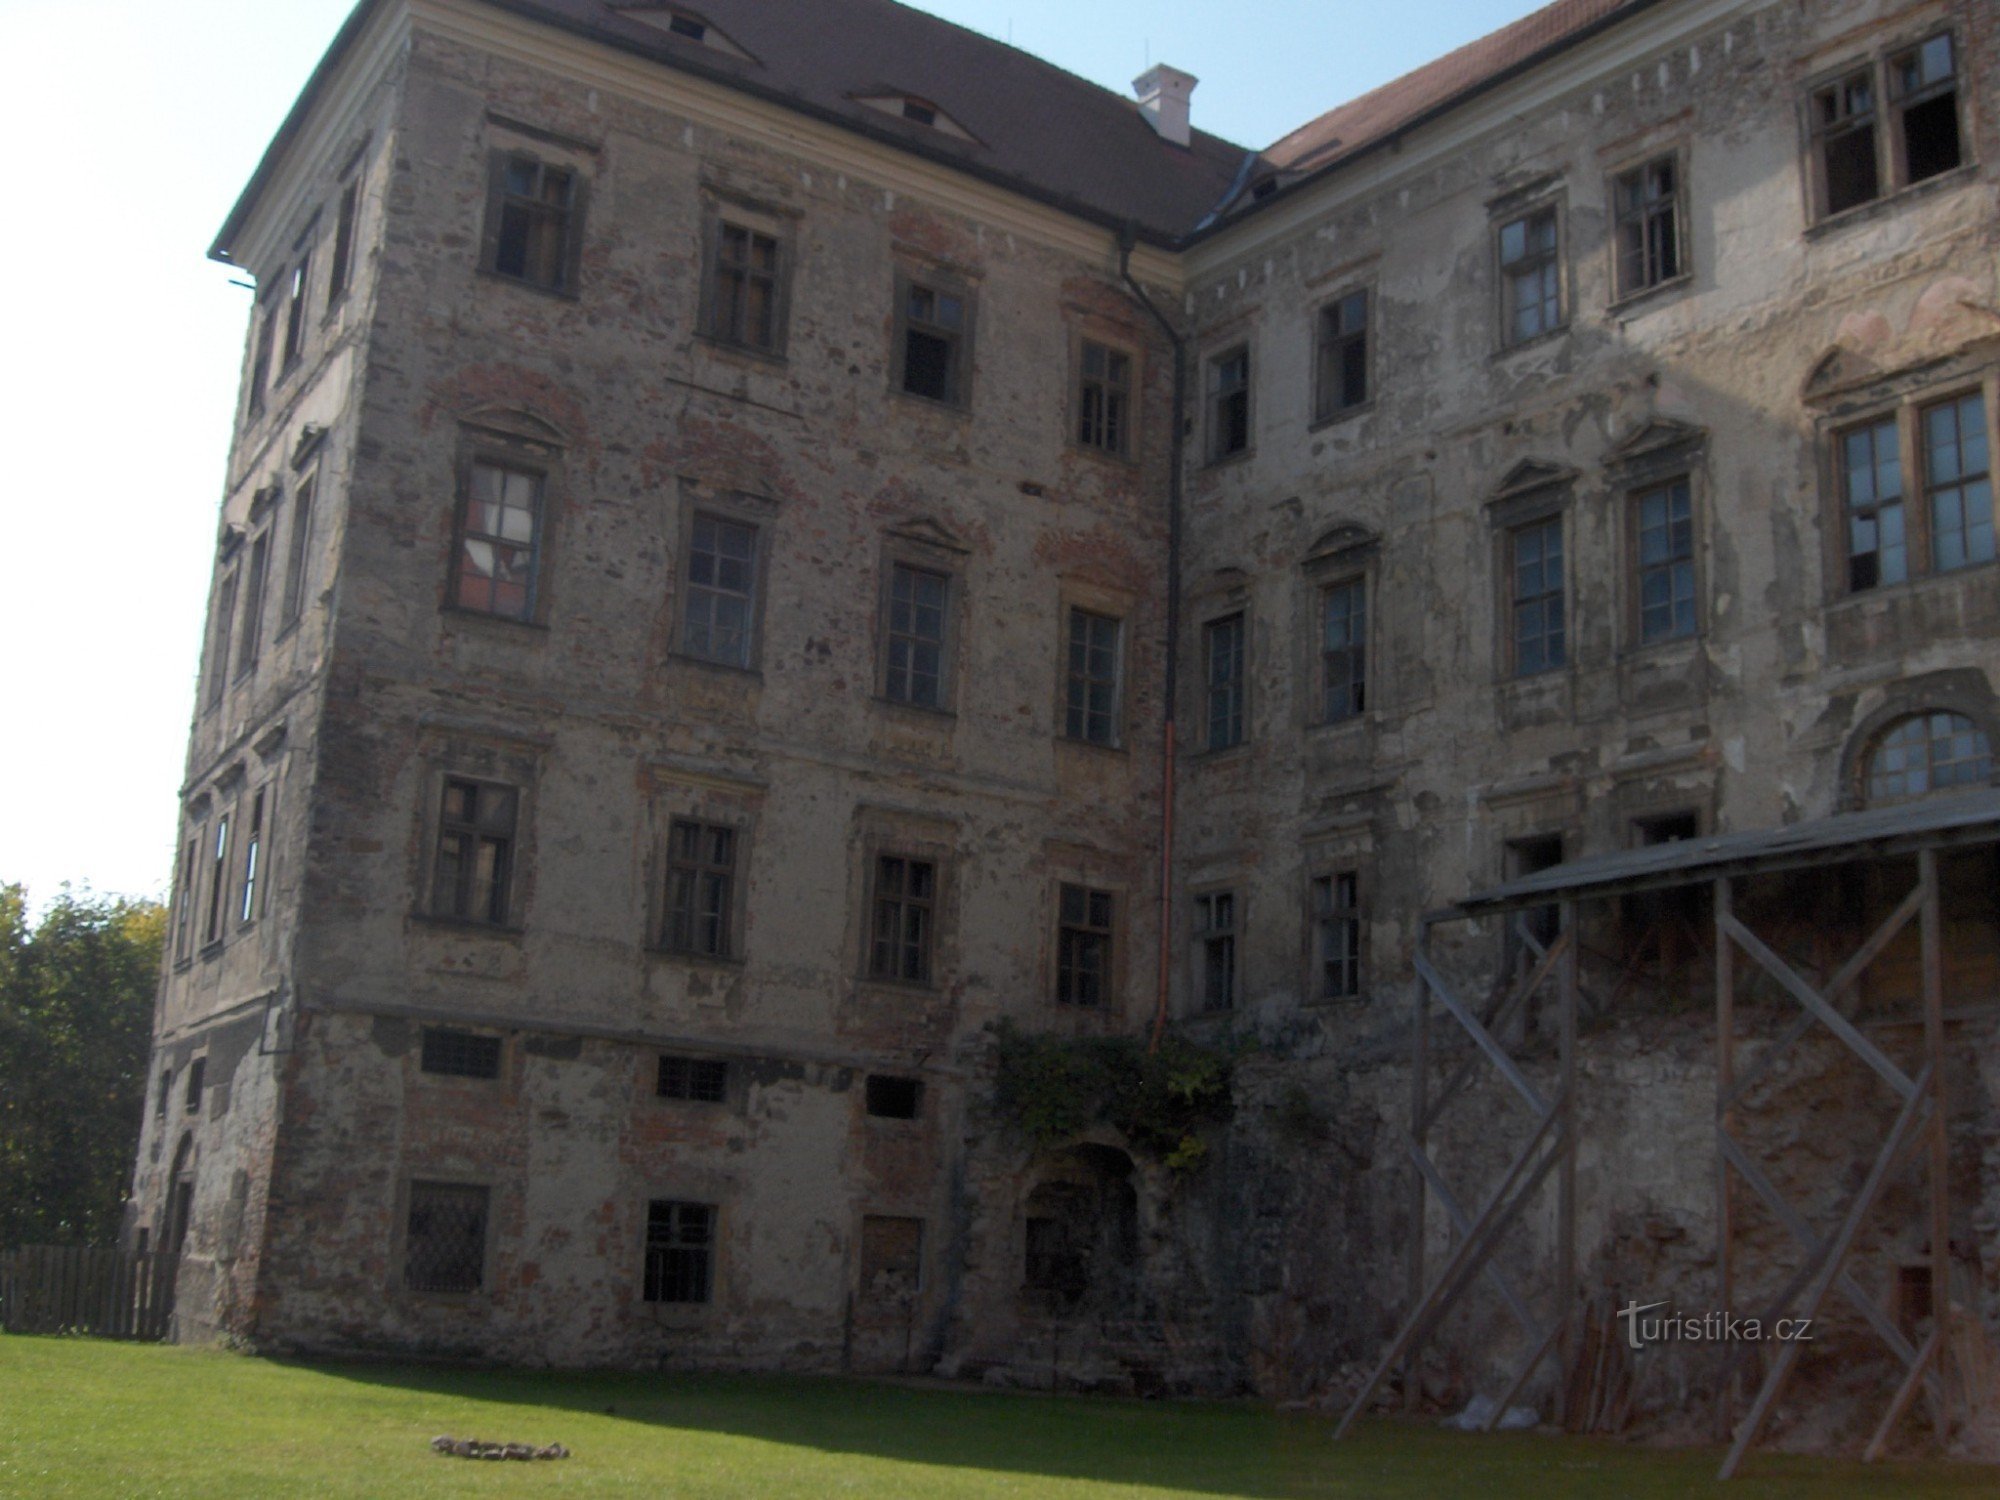 αυτό είναι επίσης το κάστρο Jezeří